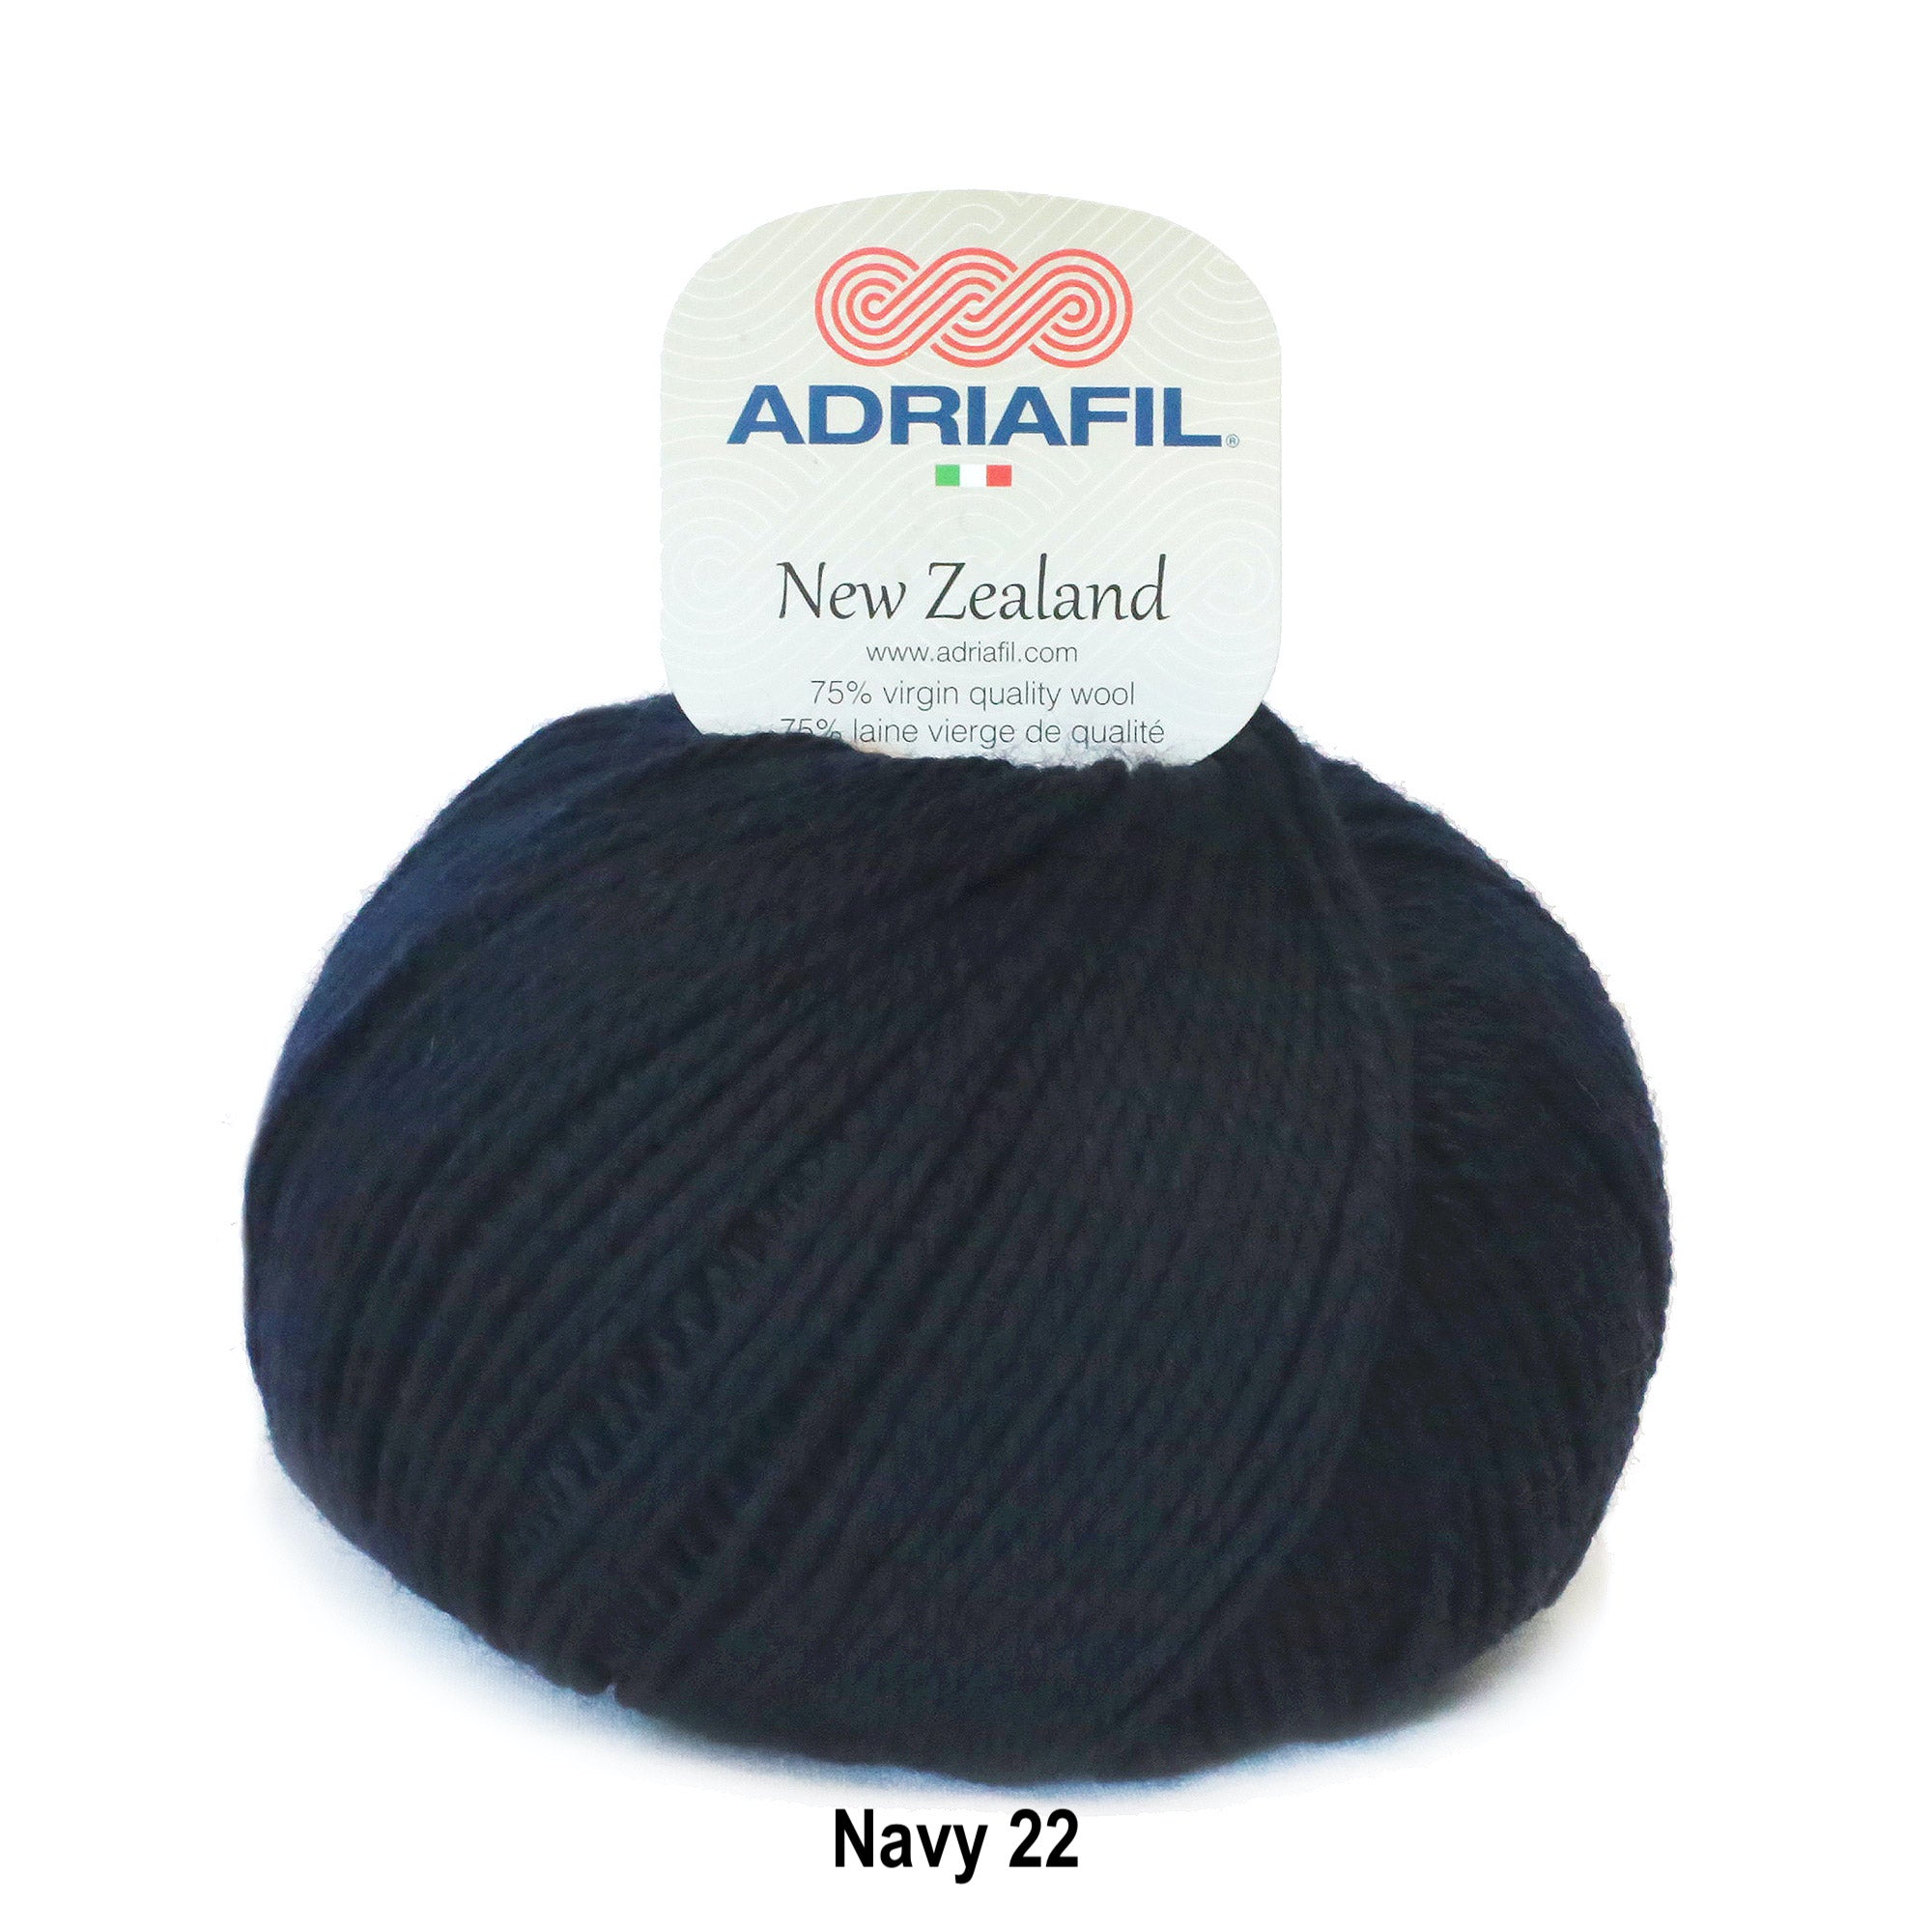 Adriafil New Zealand 75% Wool Aran